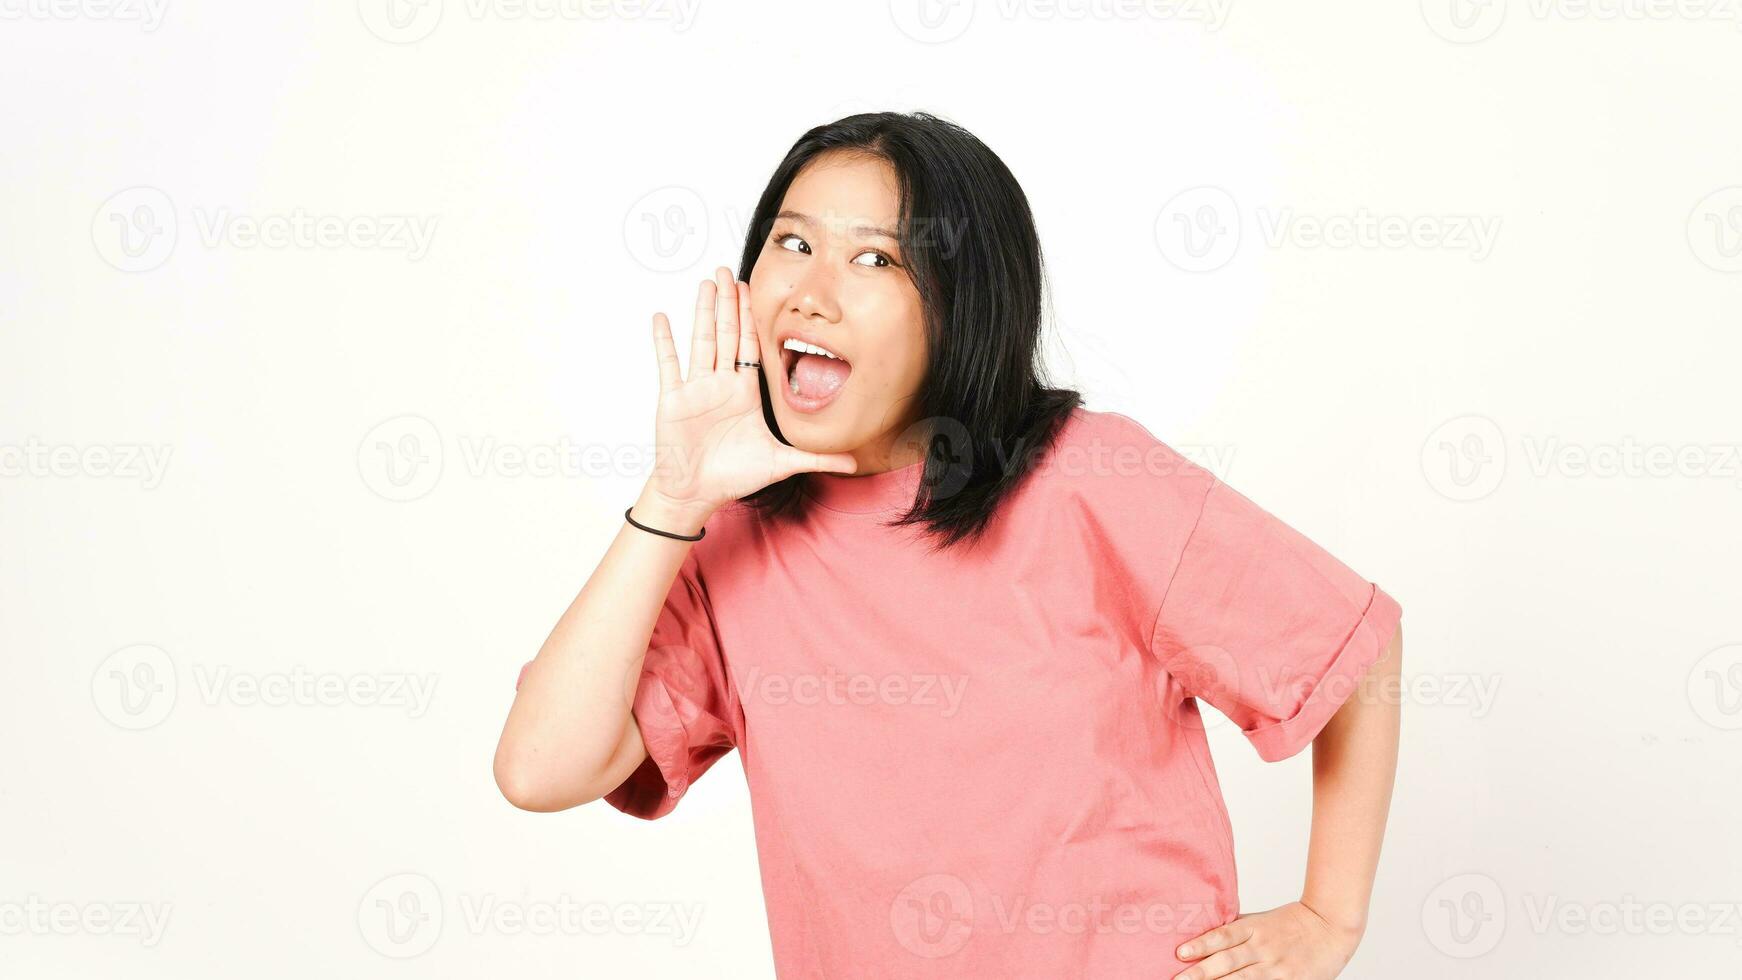 jung asiatisch Frau schreien und ankündigen etwas isoliert auf Weiß Hintergrund. foto